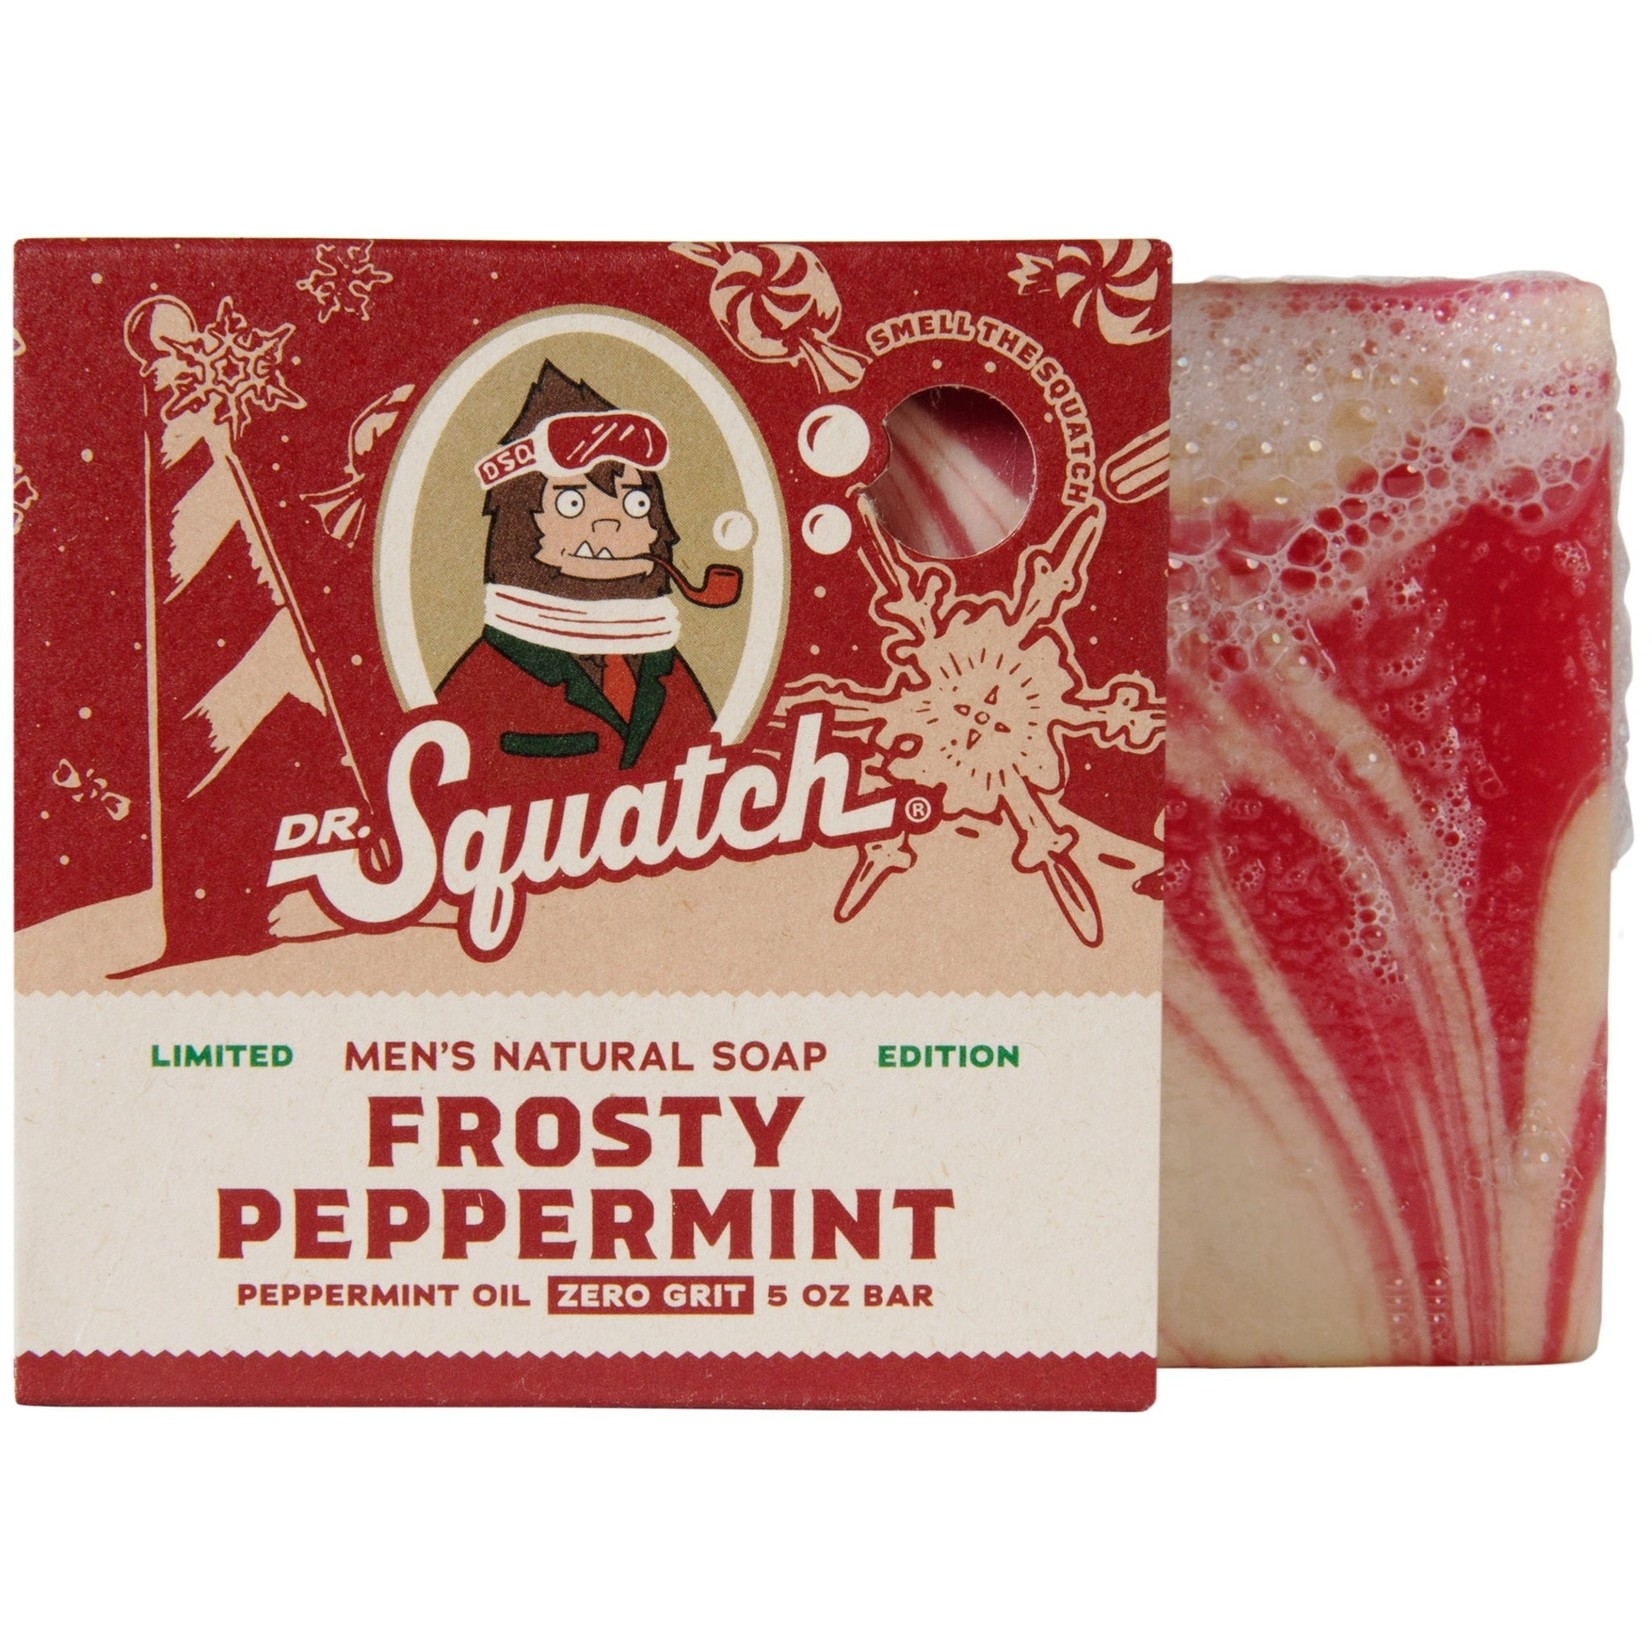 https://cdn.shoplightspeed.com/shops/621427/files/50235810/1652x1652x1/dr-squatch-dr-squatch-bar-soap-frosty-peppermint.jpg